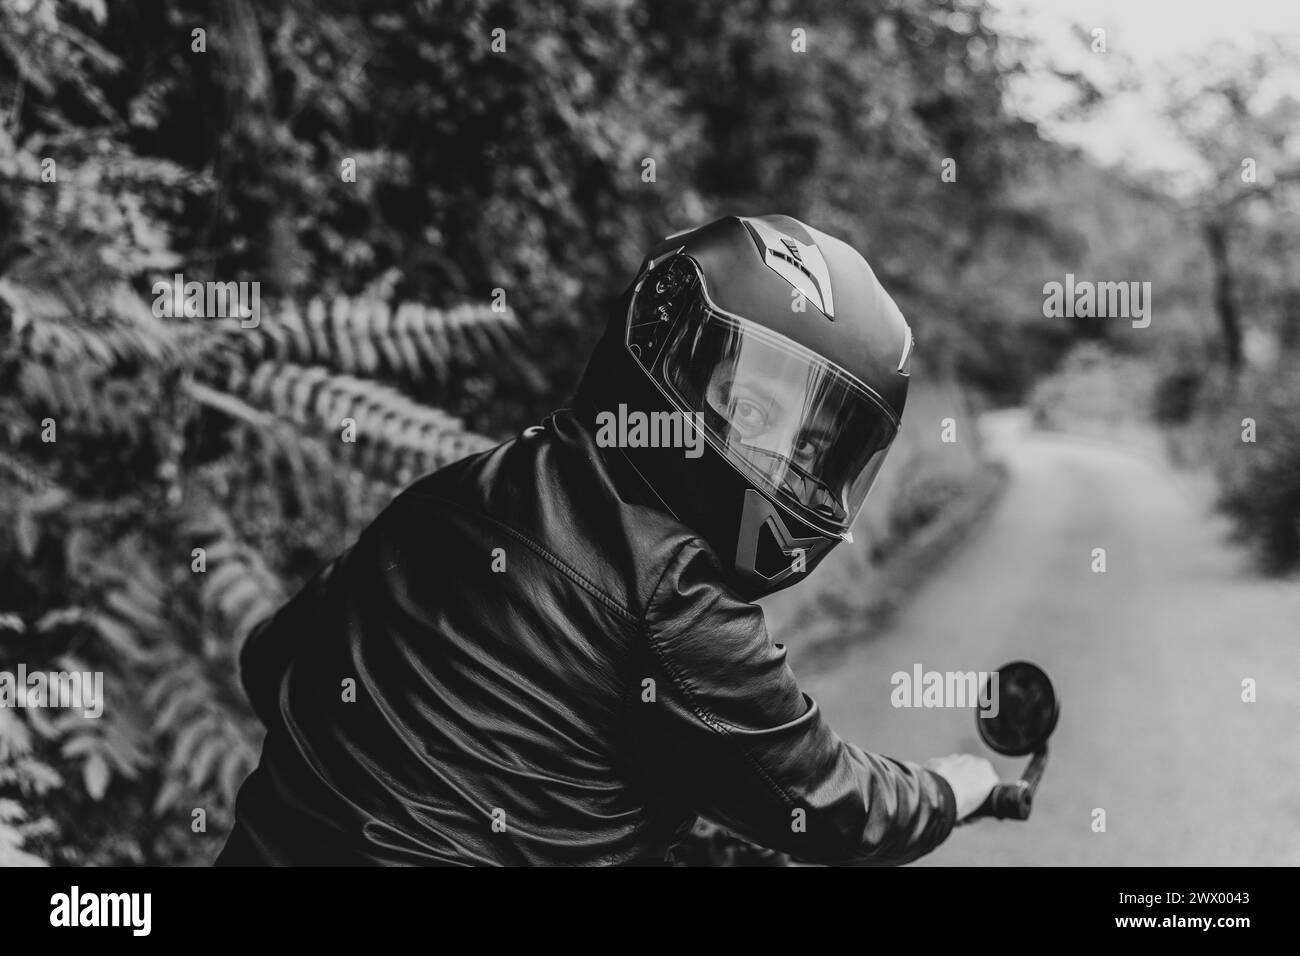 Der Blick des Fahrers. Porträt eines Mannes mit schwarzem Helm und Lederjacke, der zurückblickt. Moto-Ritt-Chroniken auf der Straße. Schwarzweiß. Stockfoto